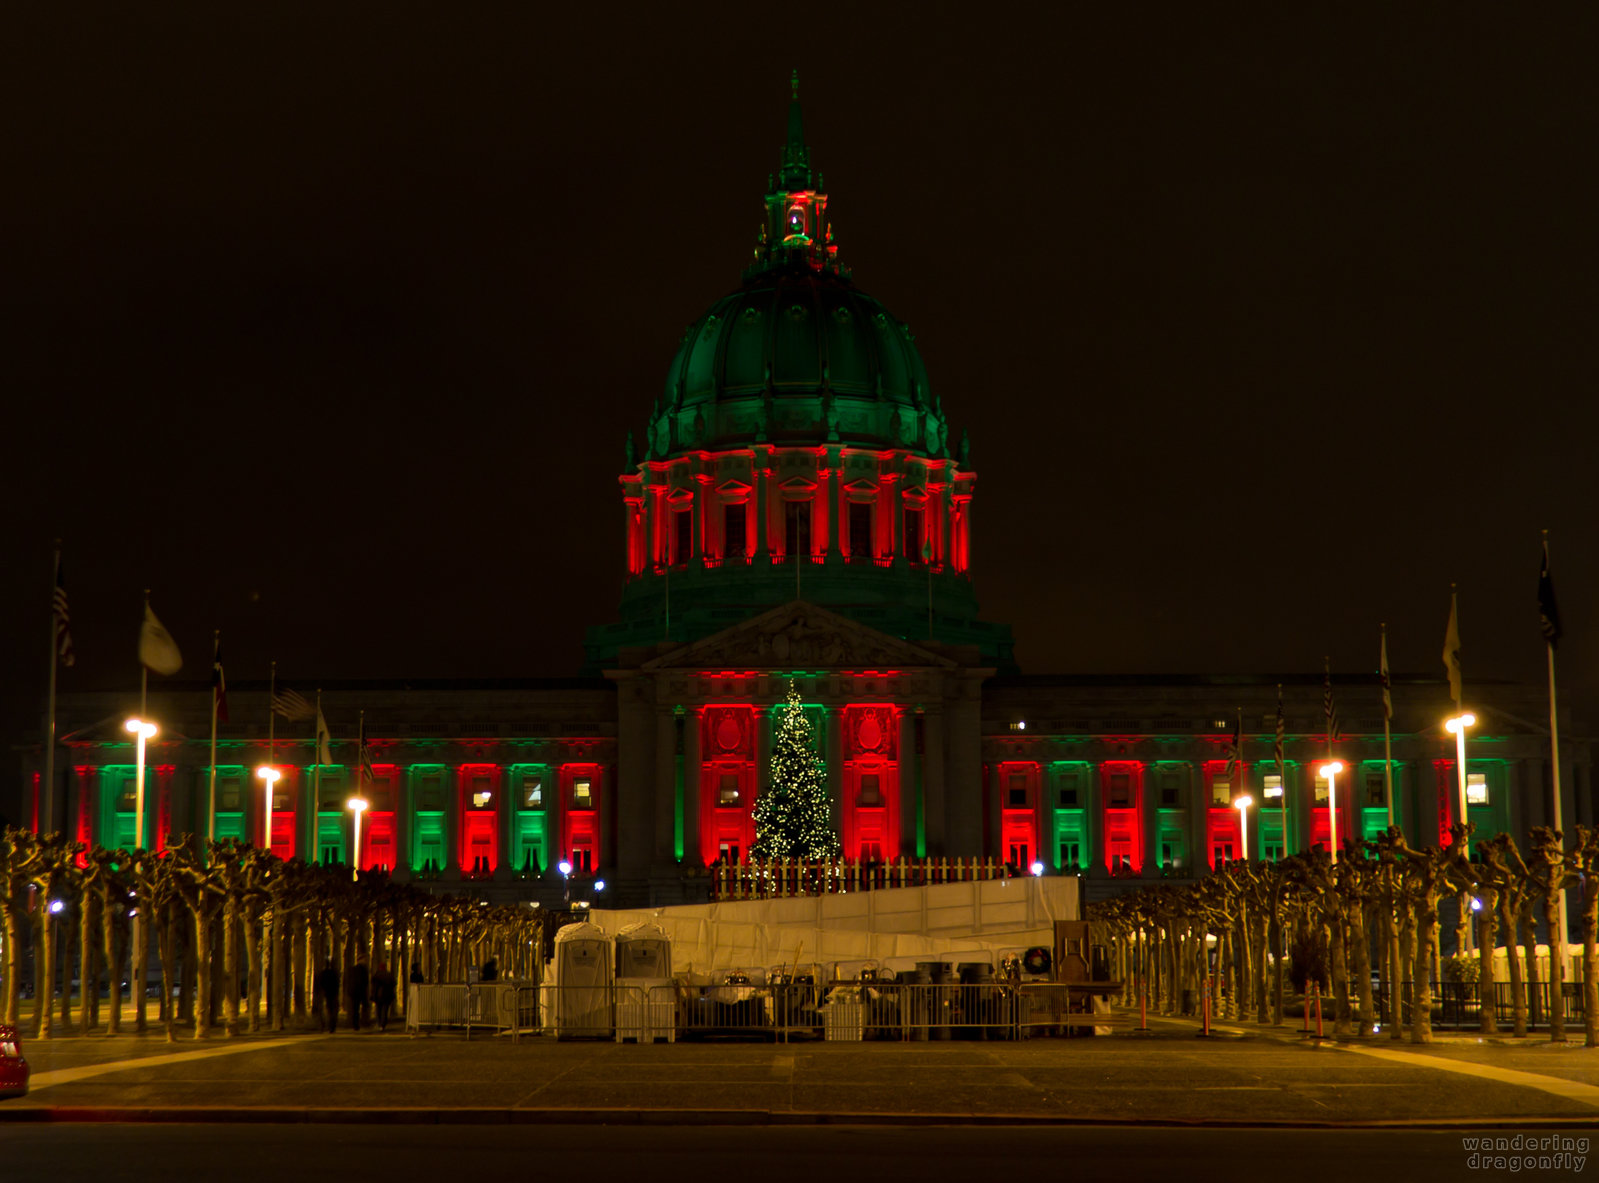 City Hall of San Francisco with christmas lights -- christmas decoration, city hall, lighting, night